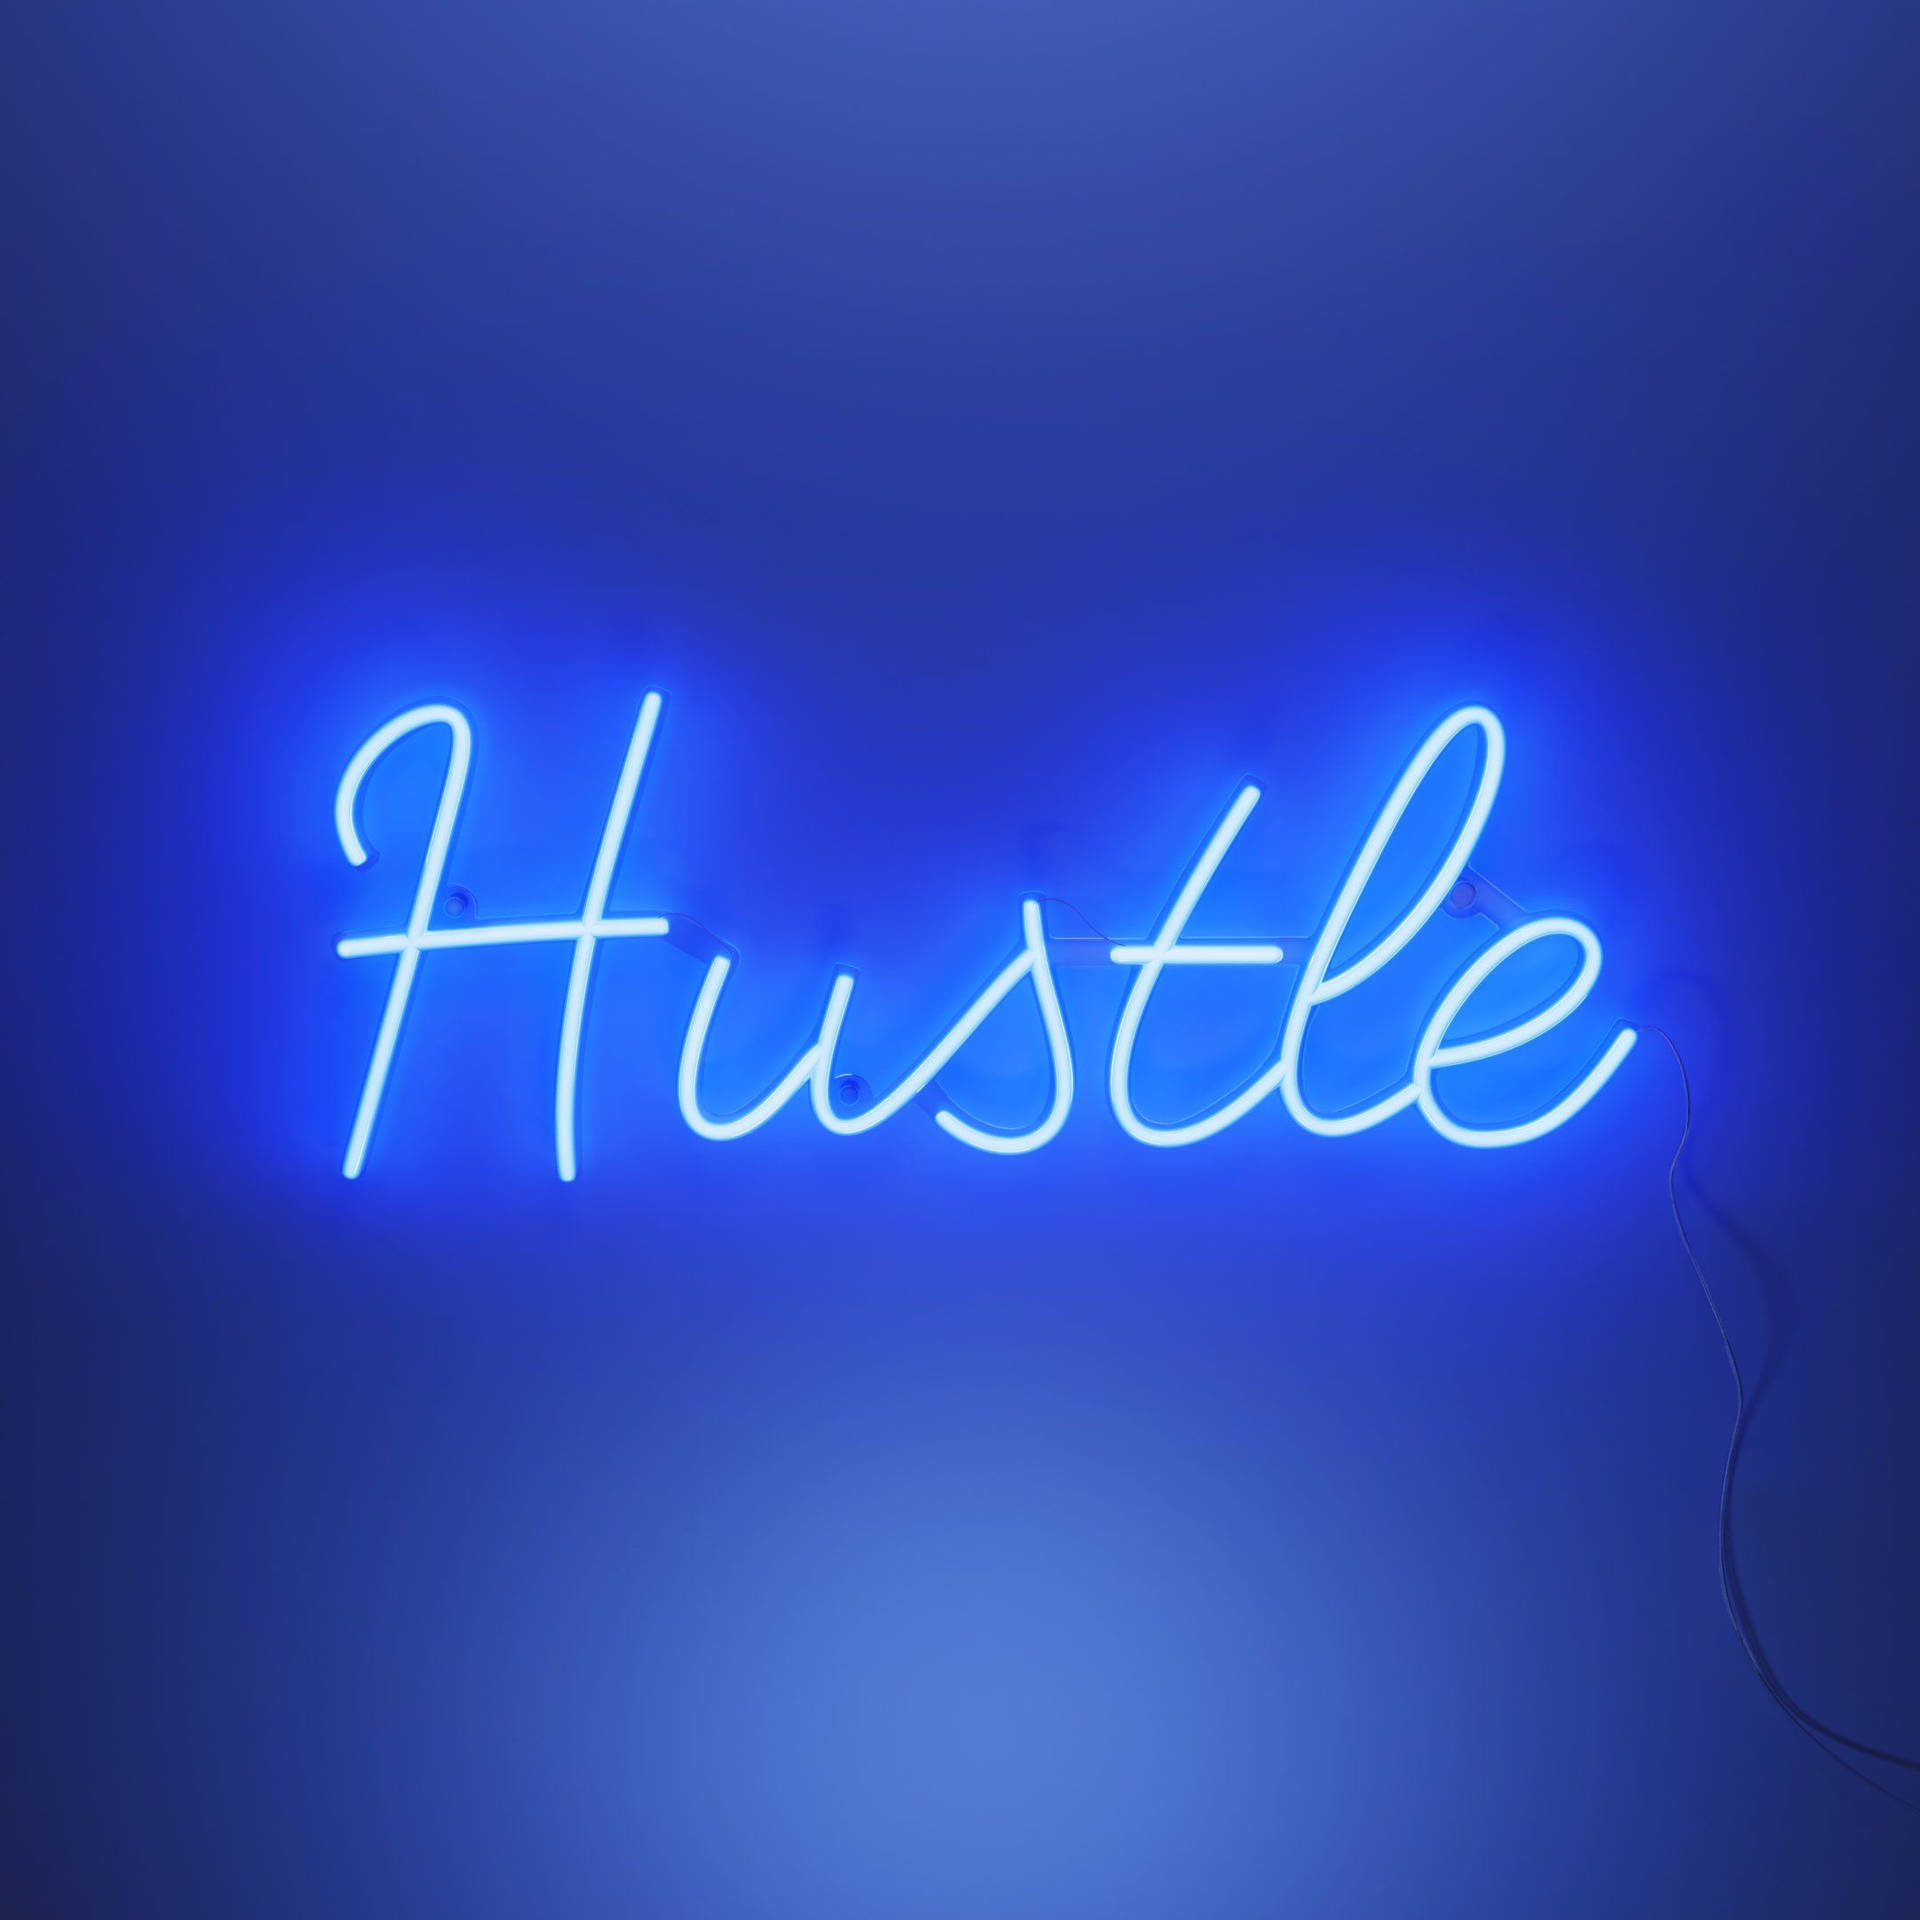 Neon Blue Aesthetic Hustle Signage Background